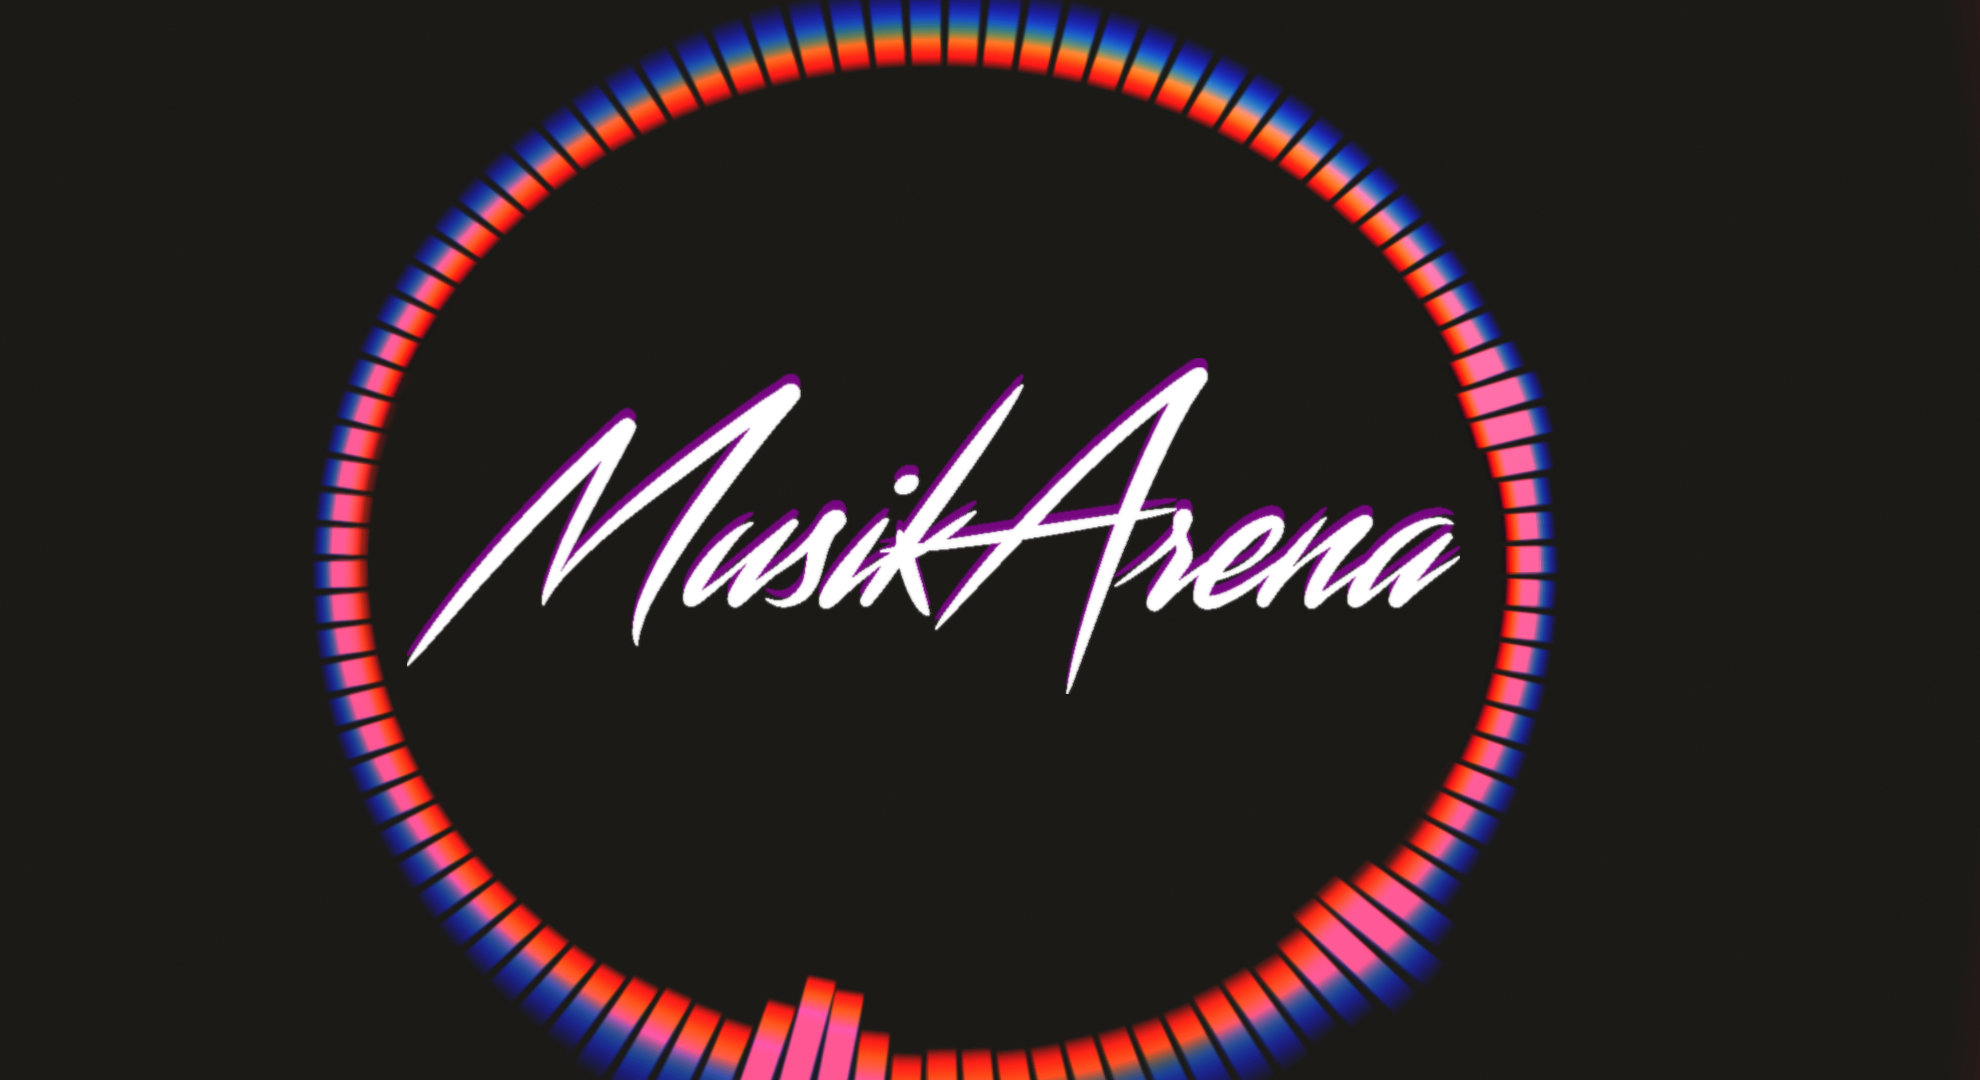 Musik Arena